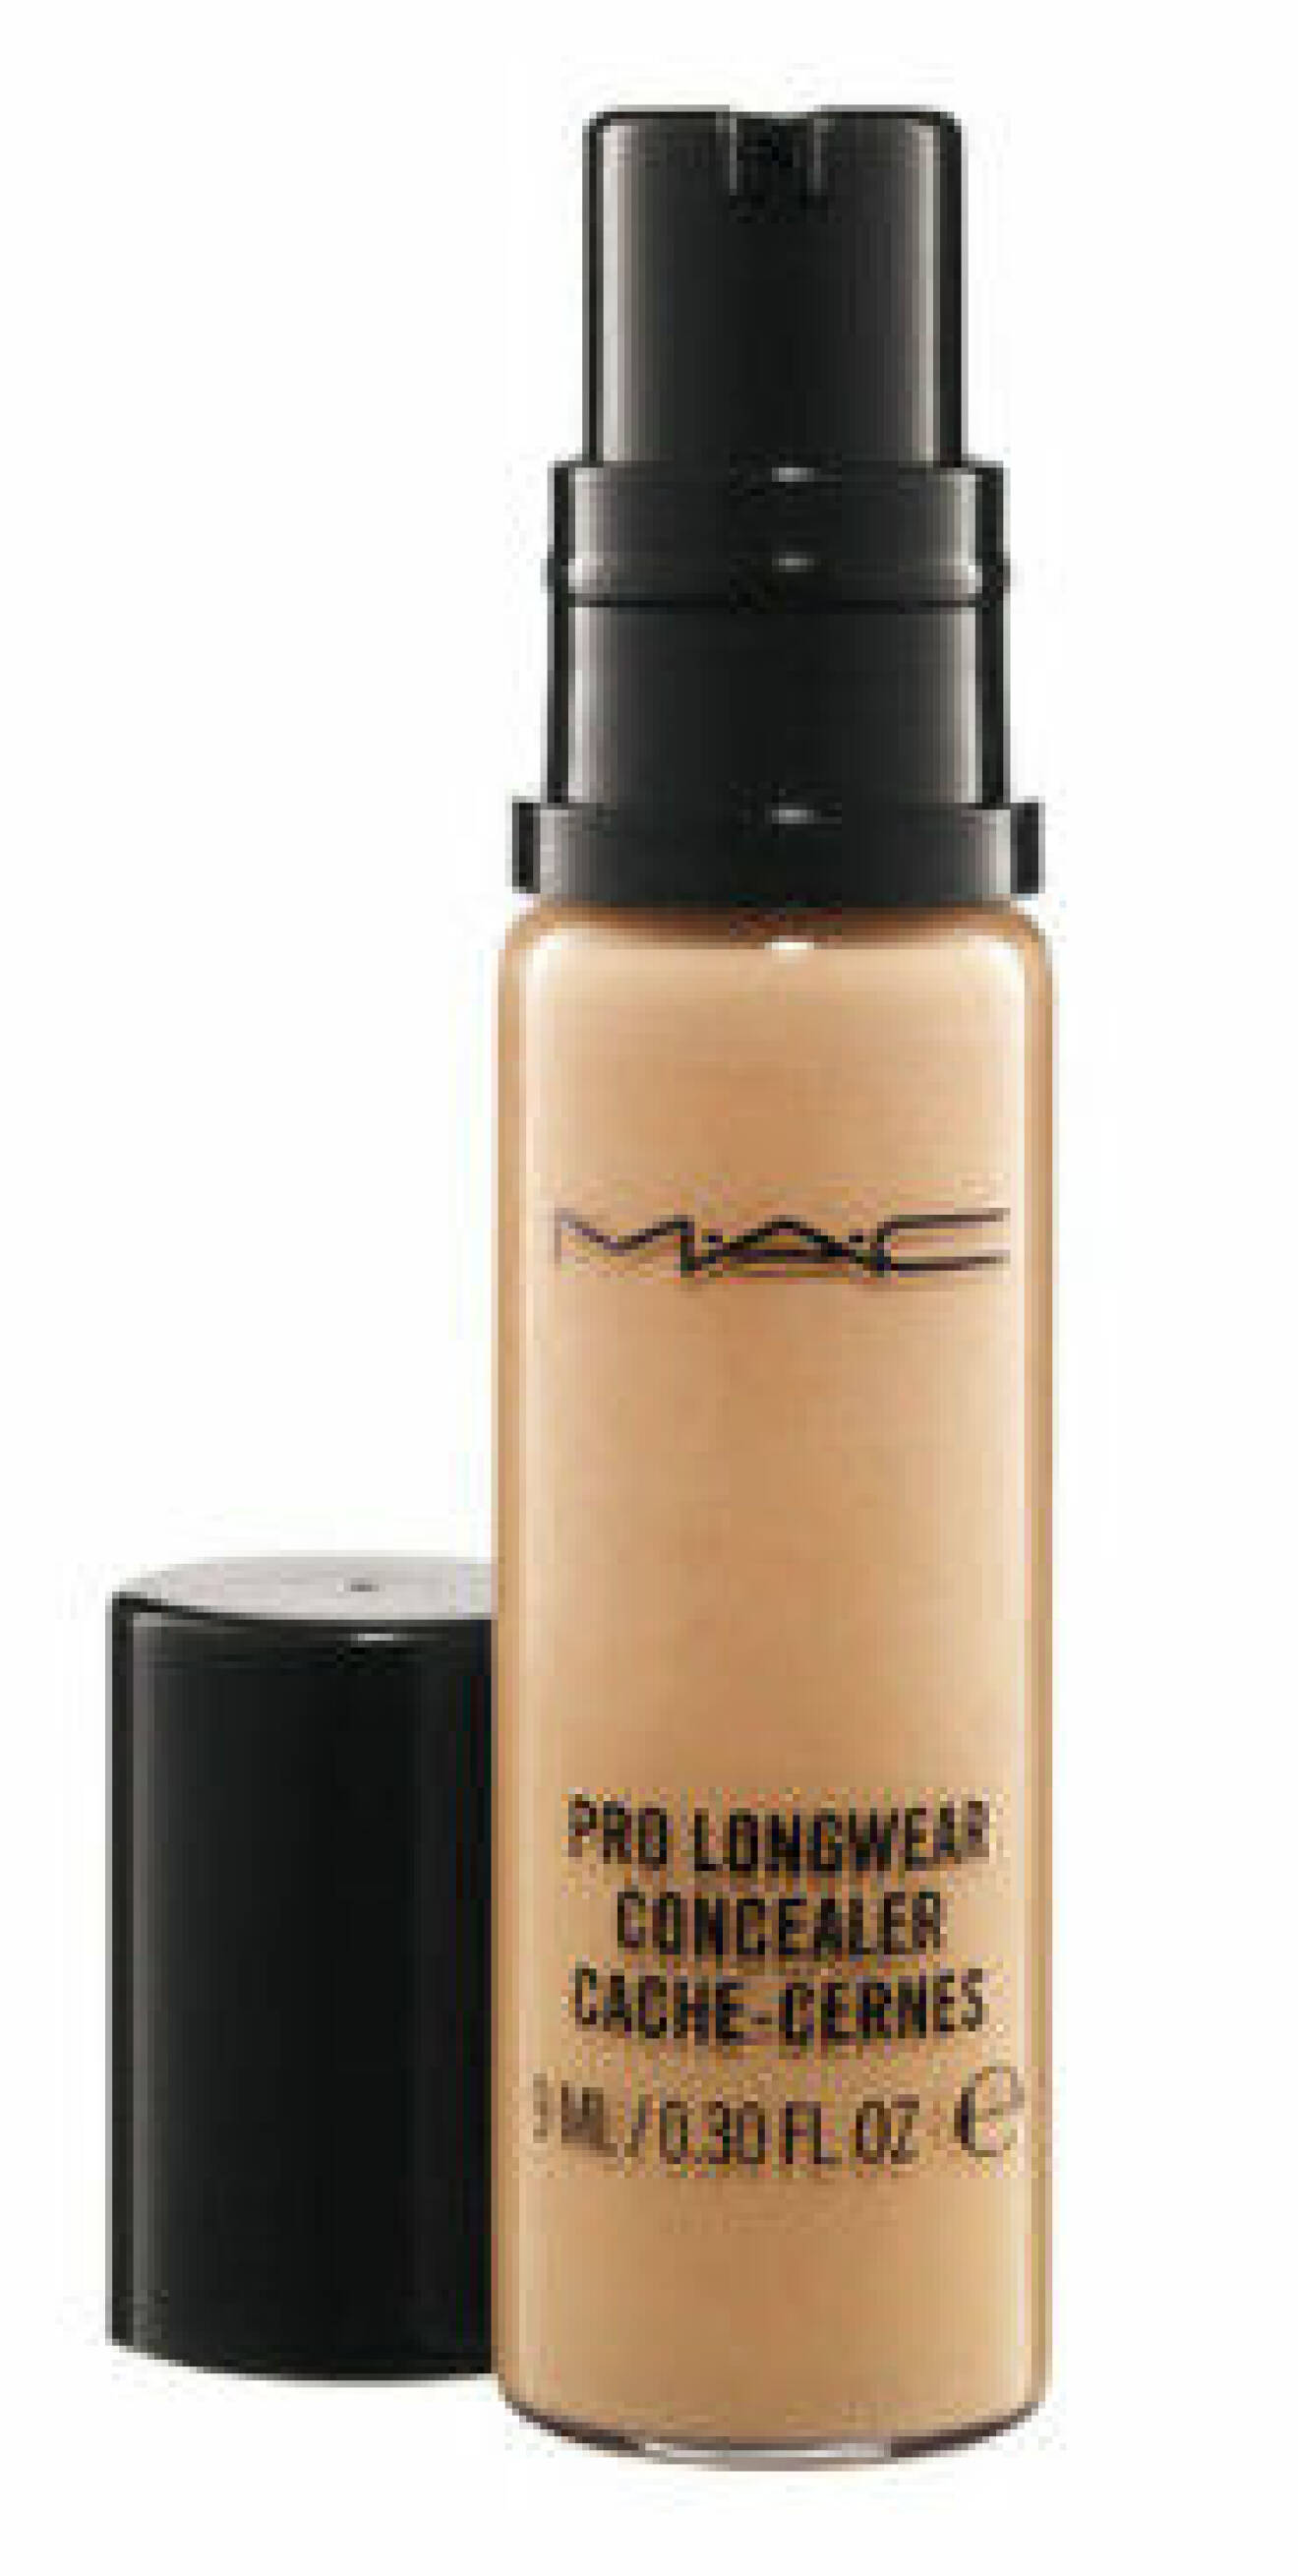 Pro Longwear Concealer från MAC ger mycket täckning och sitter i 15 timmar.